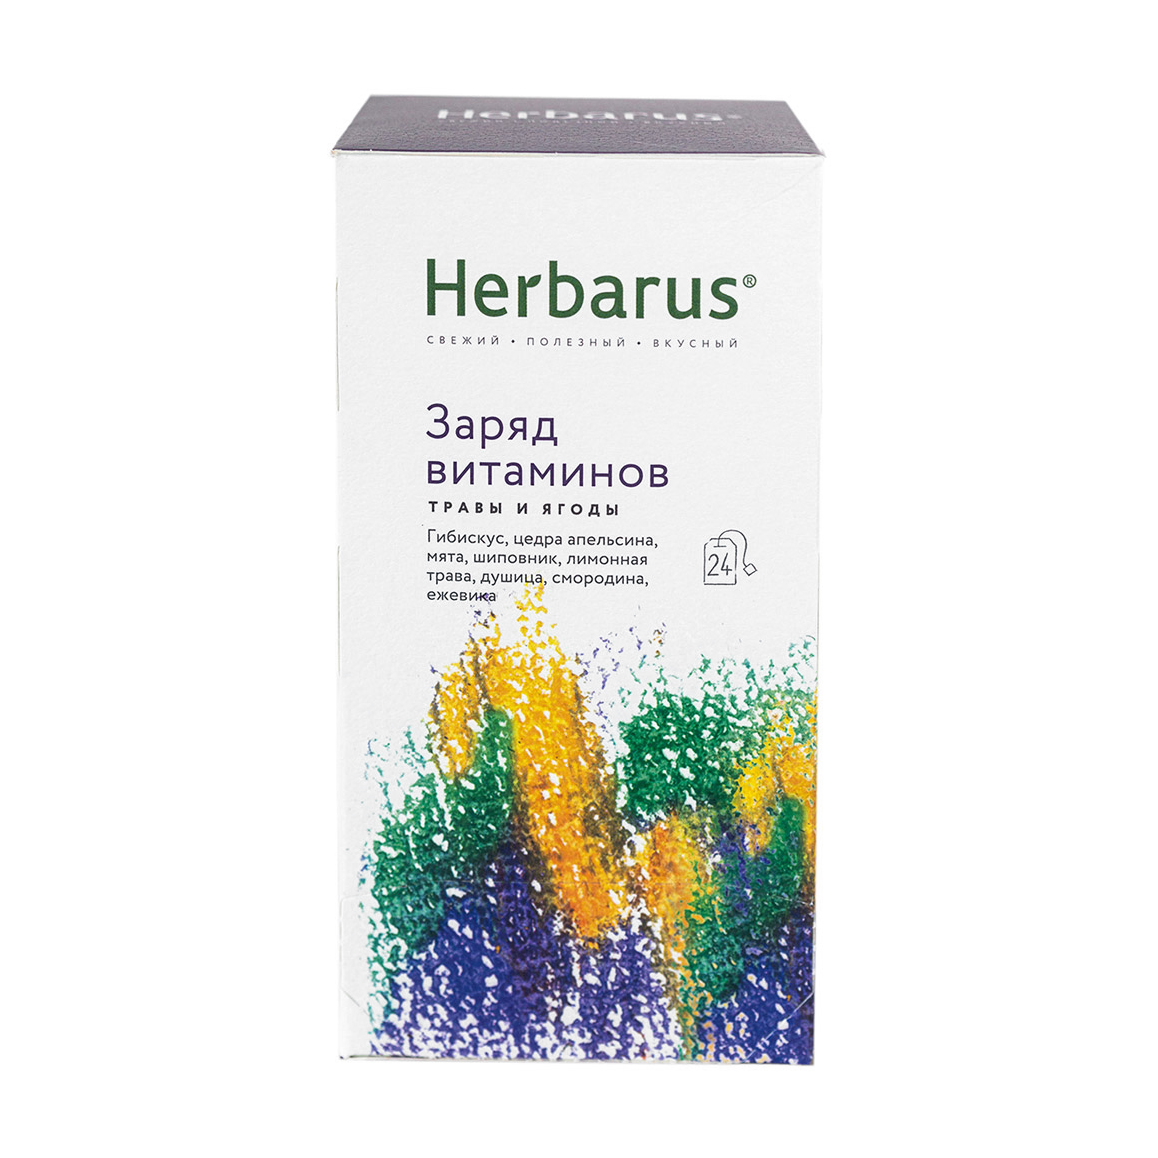 Чайный напиток Herbarus Заряд витаминов 24 пакетика чайный напиток konigin herbarium чабрец и душица 20 пак